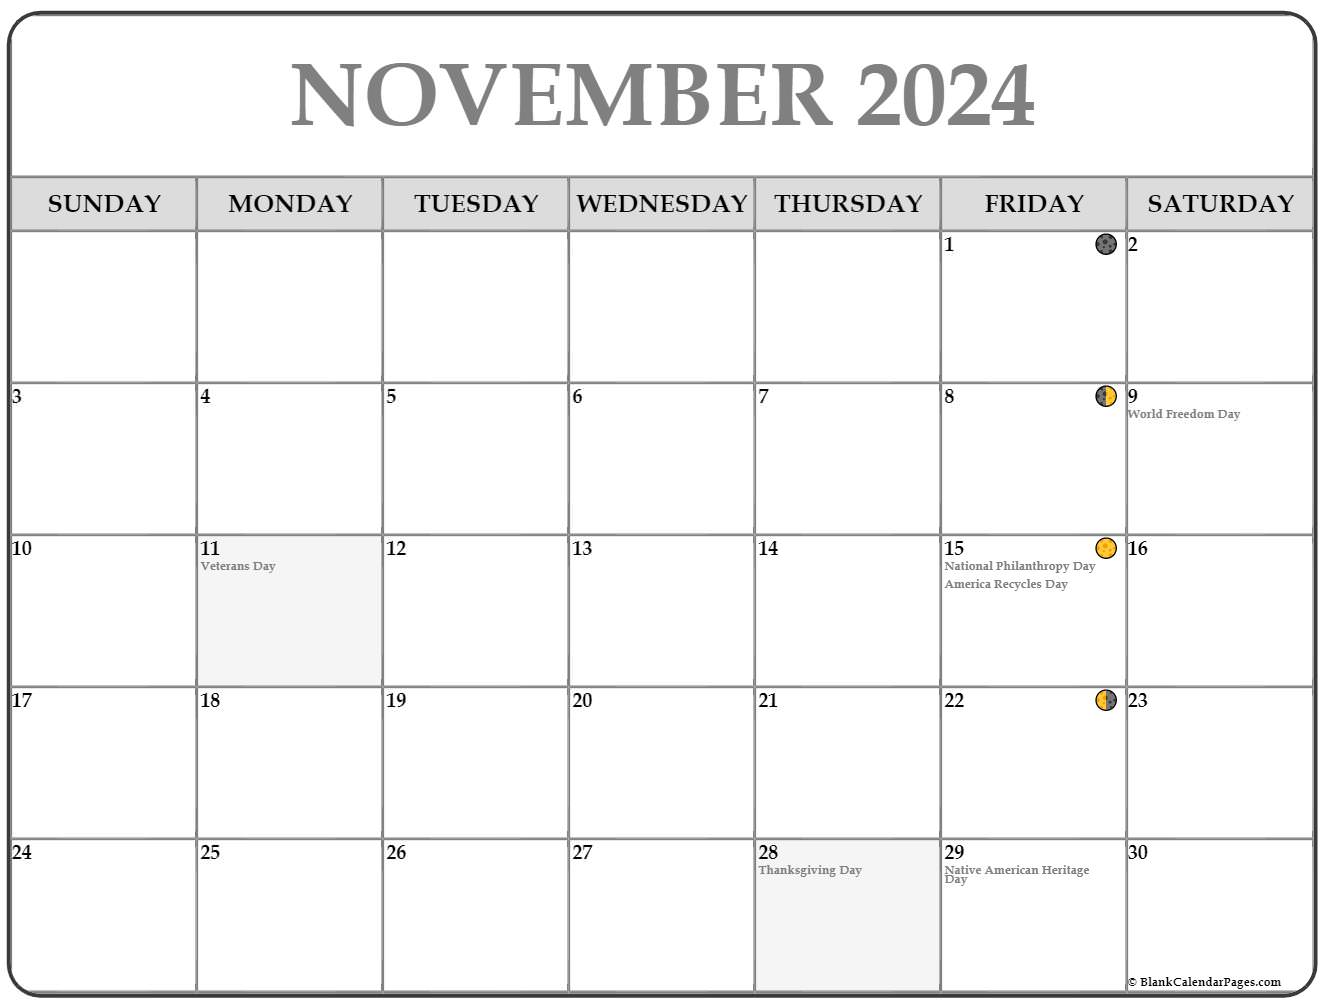 November 2024 Lunar Calendar Moon Phase Calendar